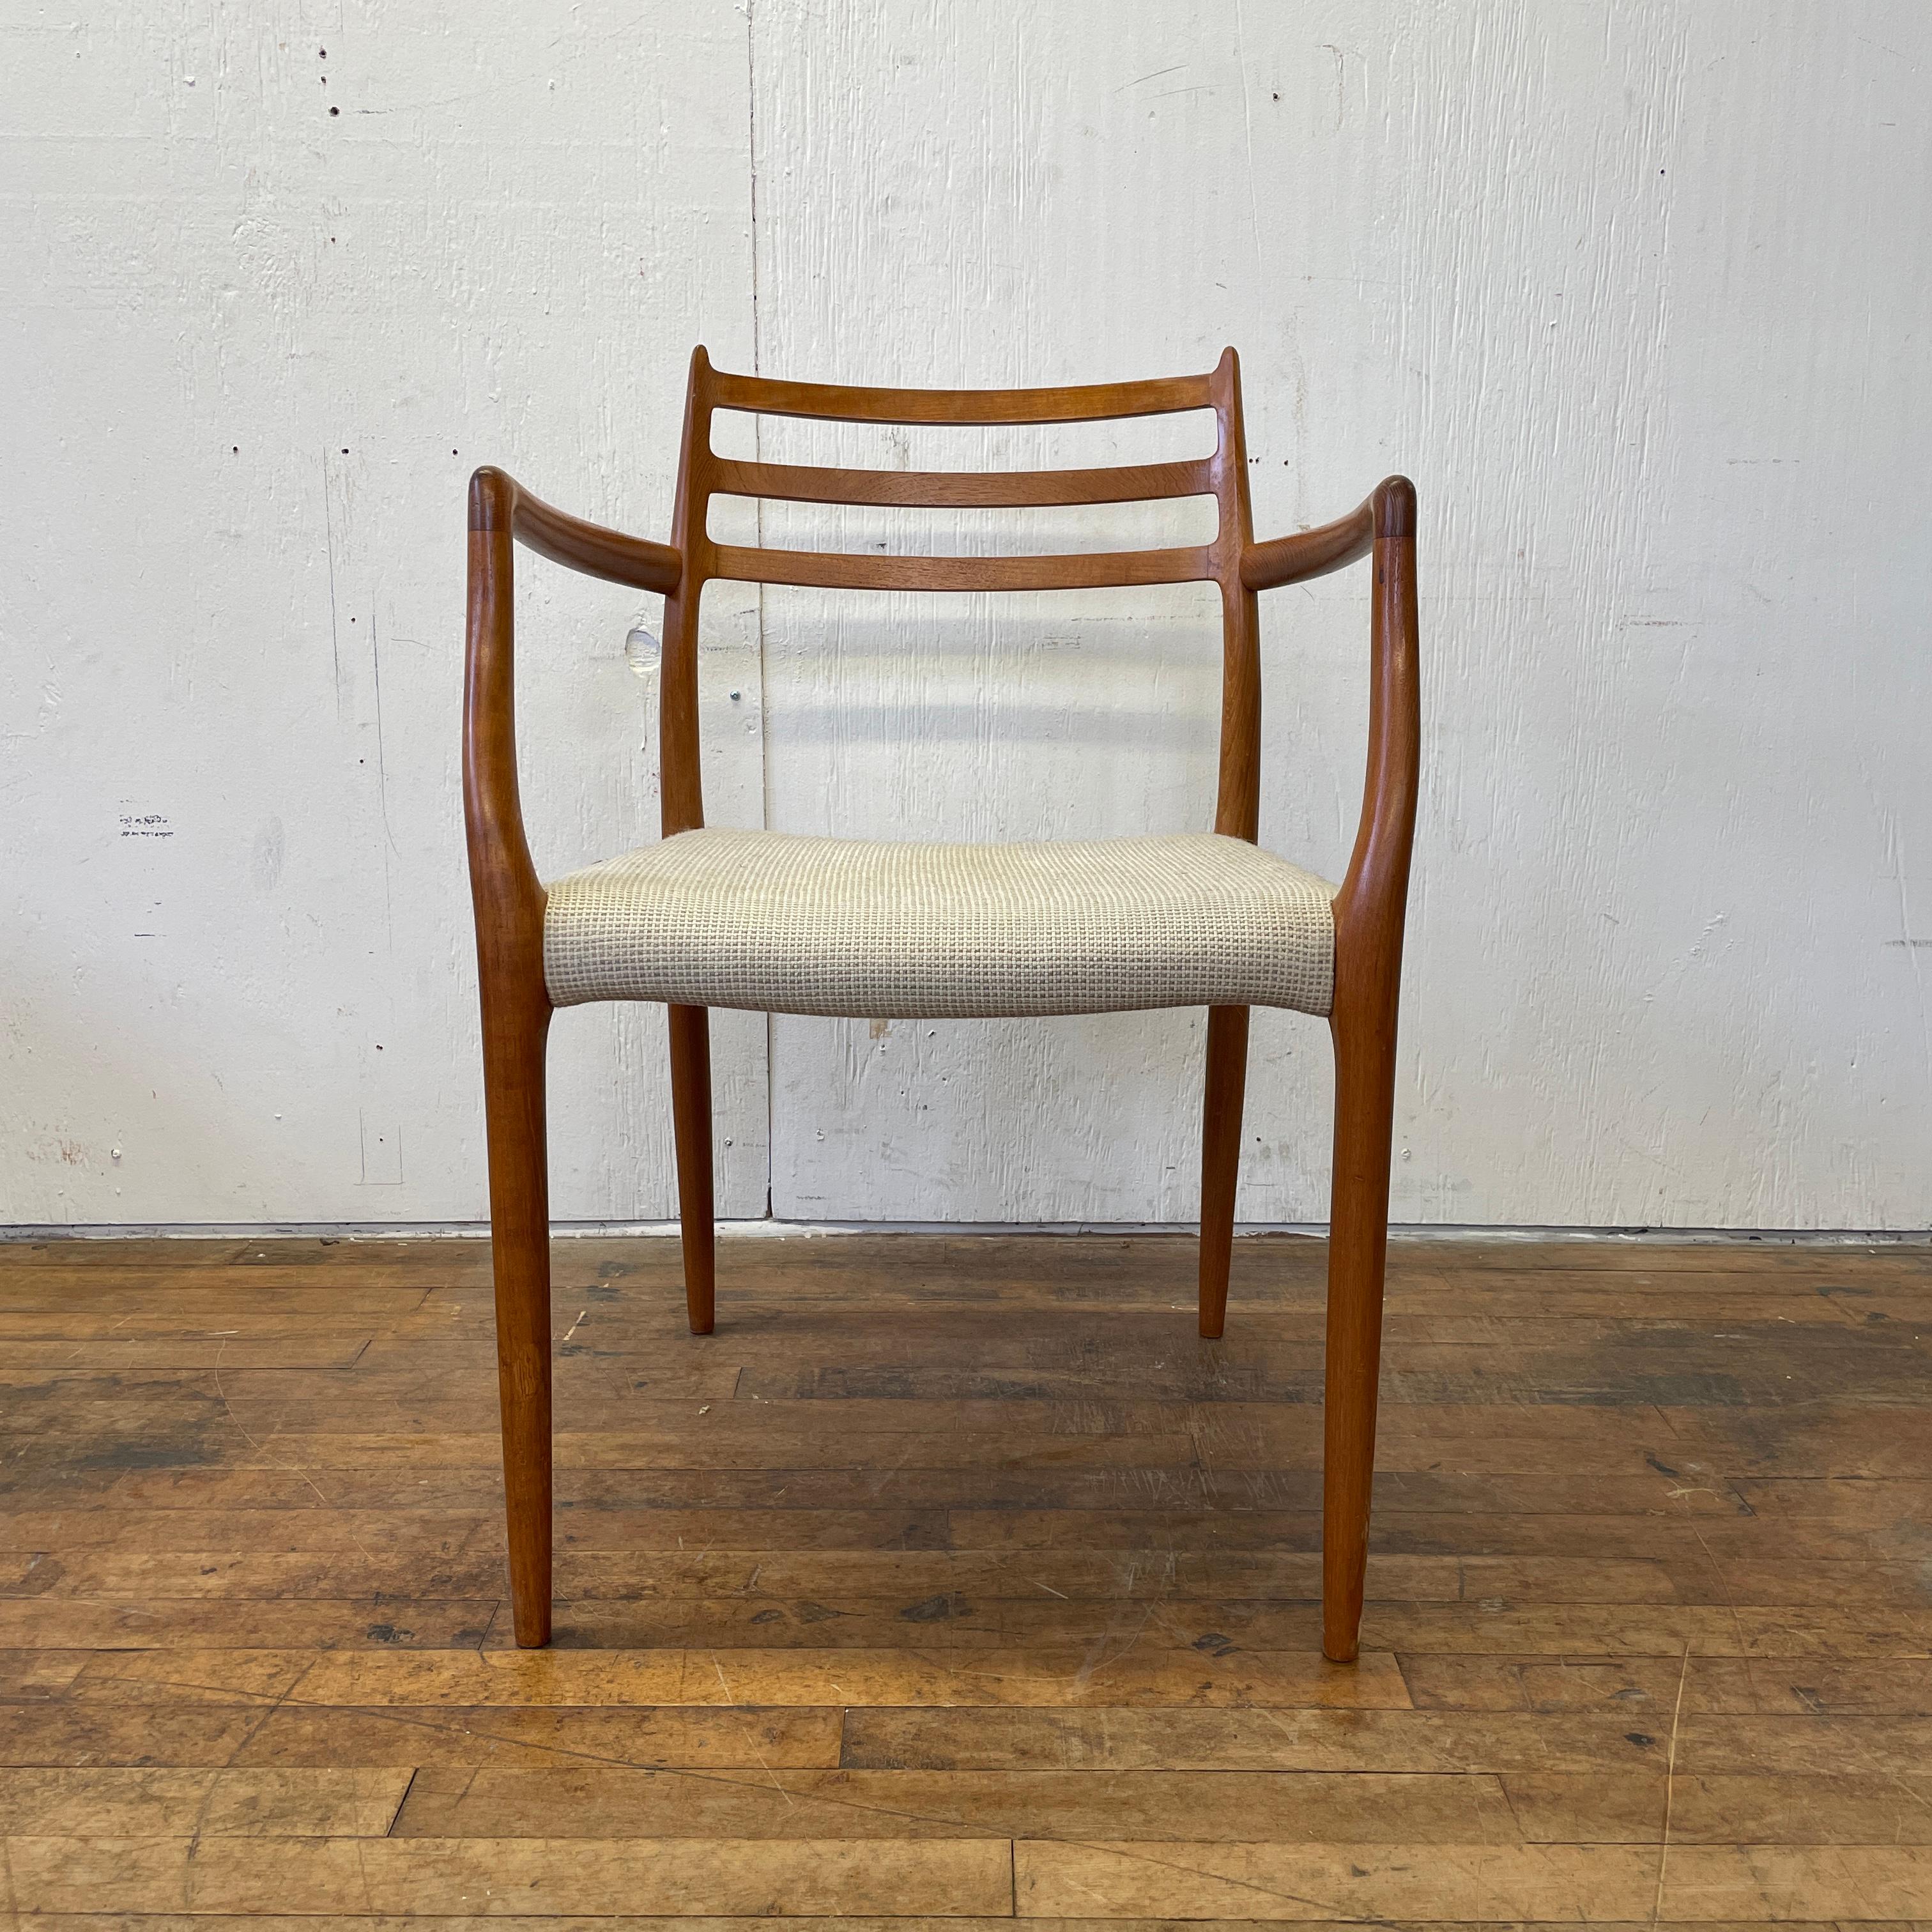 Dieser skandinavische Sessel Modell #62 von Niels Otto Moller gehört zu den stilvollsten und ikonischsten Stühlen, die man für Geld kaufen kann. Er ist ein dänischer Klassiker der Mitte des Jahrhunderts. Mit seinem weich gepolsterten Sitz und dem